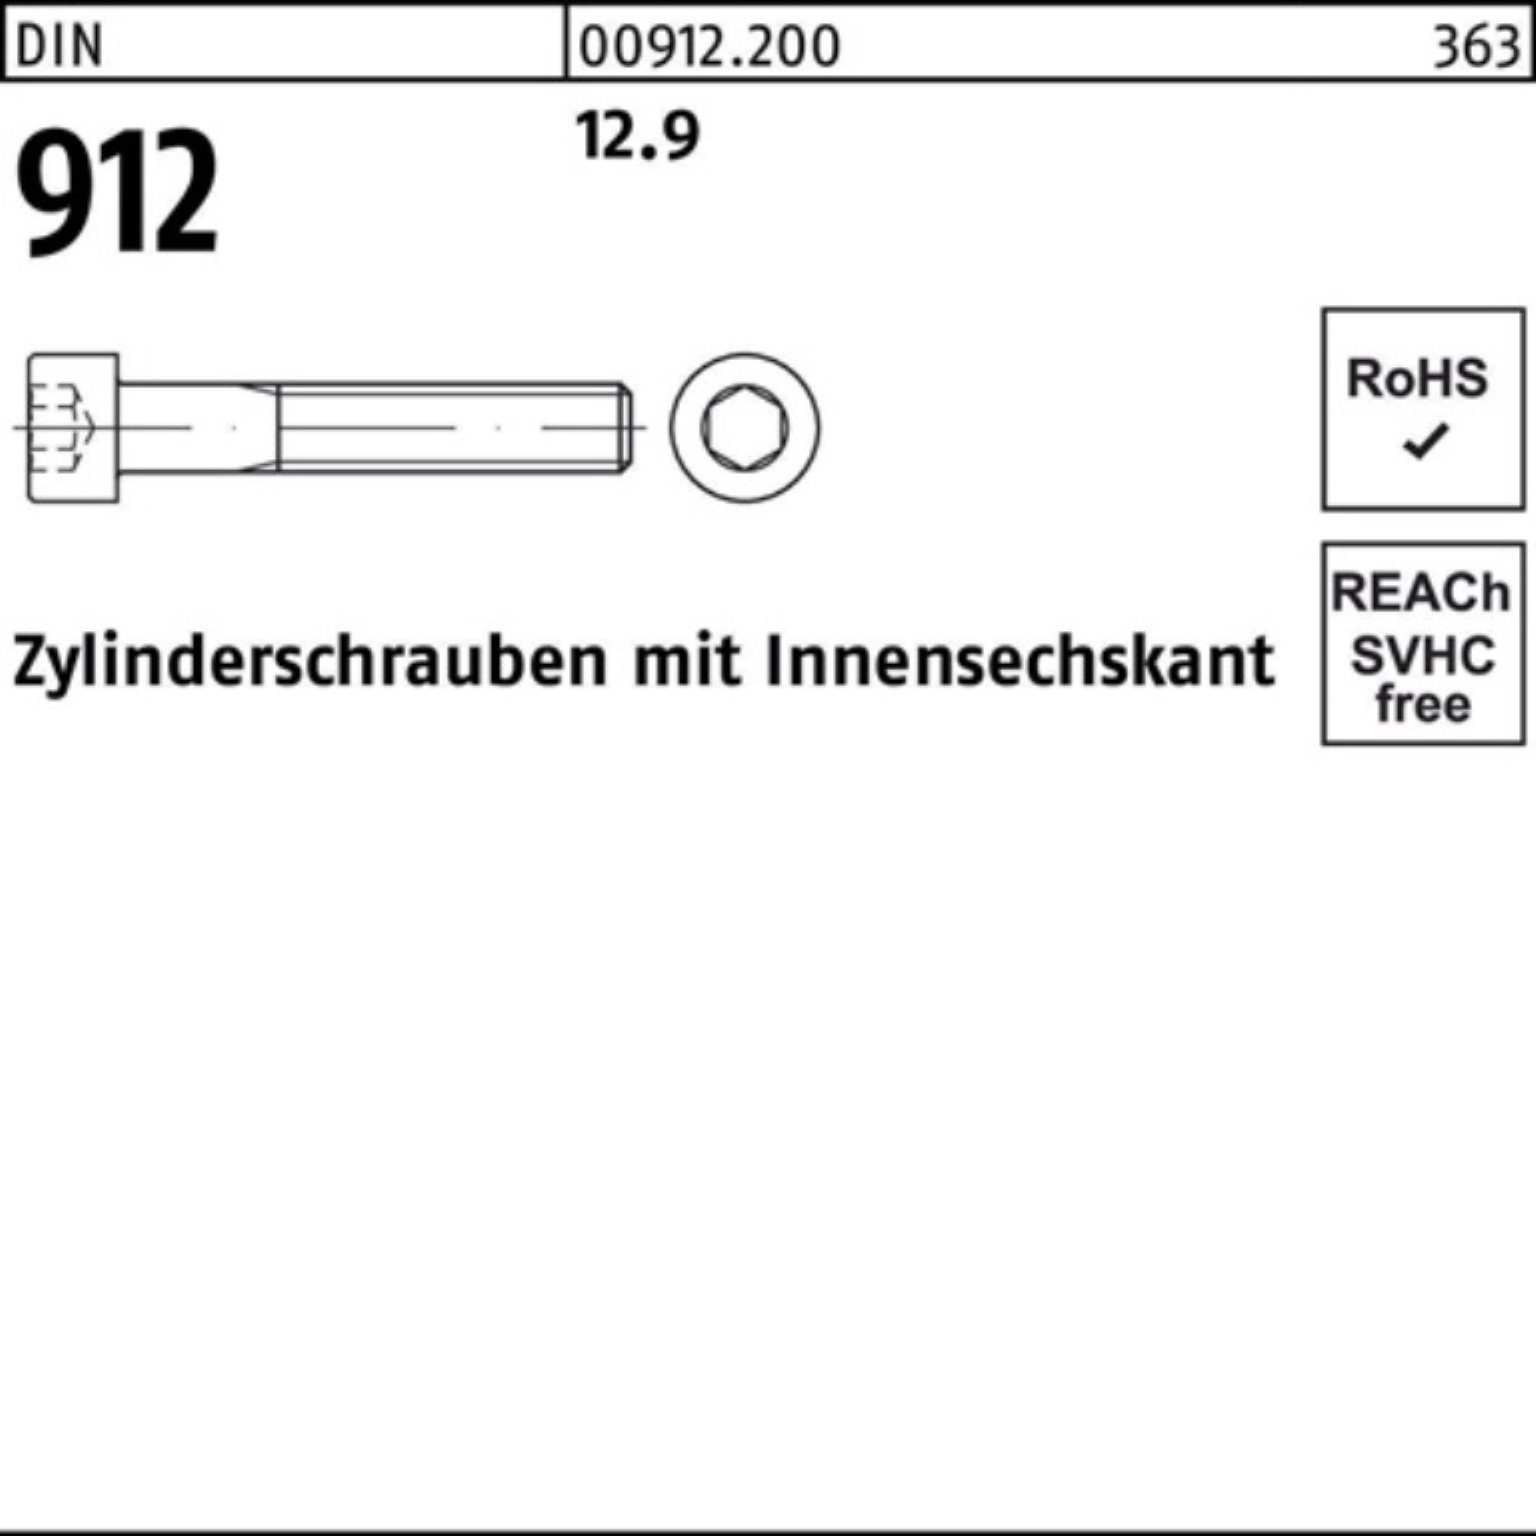 Zylinderschraube Innen-6kt 90 Zylinderschraube DIN M30x Reyher DI 1 100er Pack 912 12.9 Stück